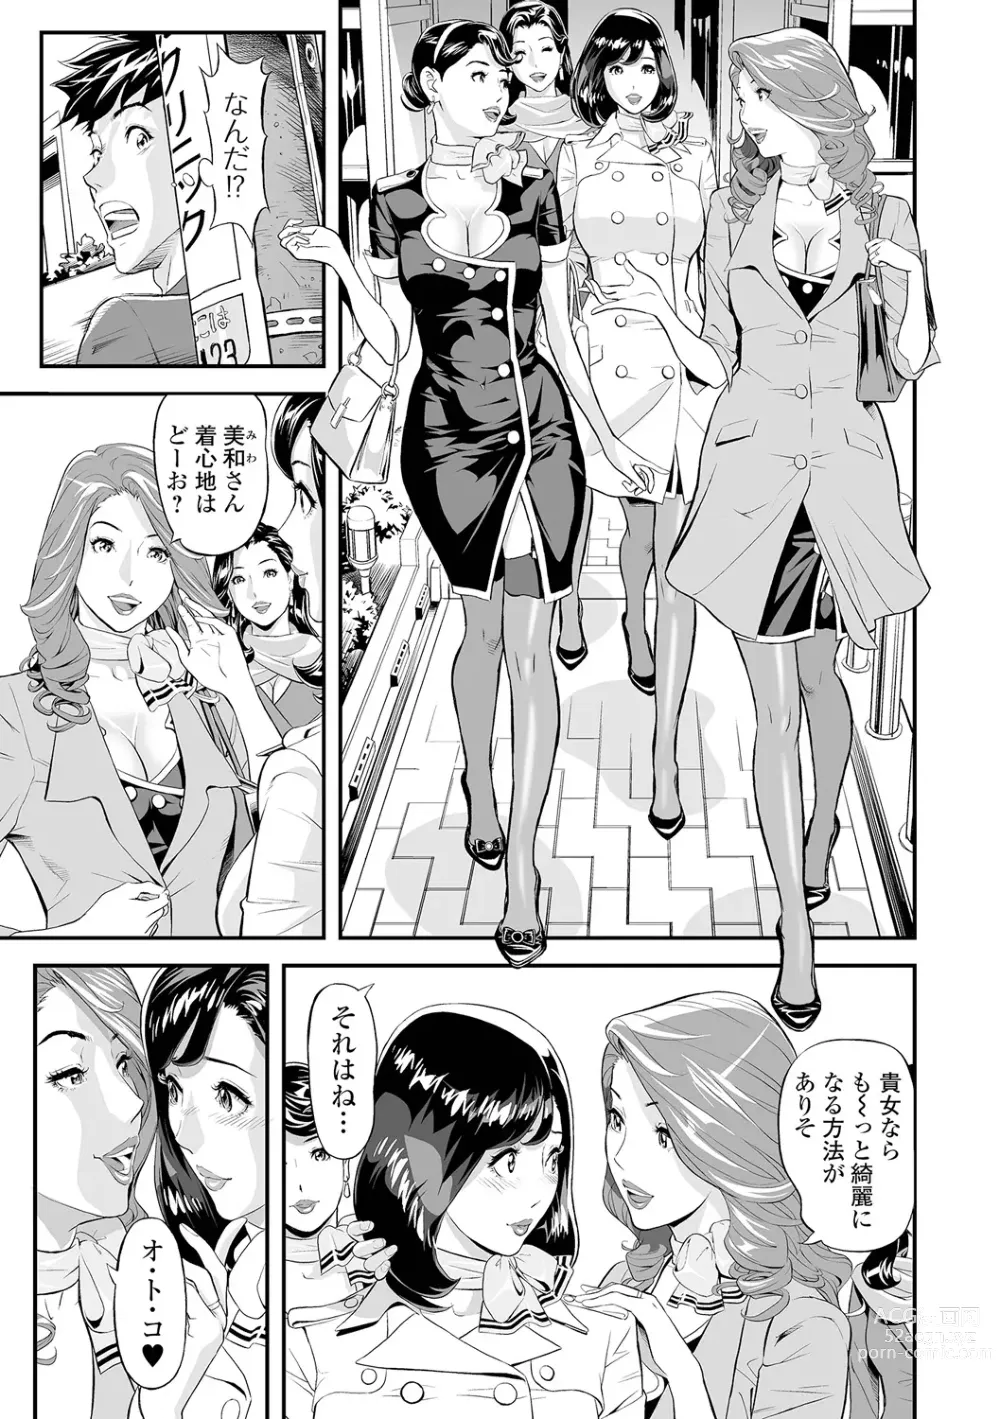 Page 9 of manga Elegant Erogant